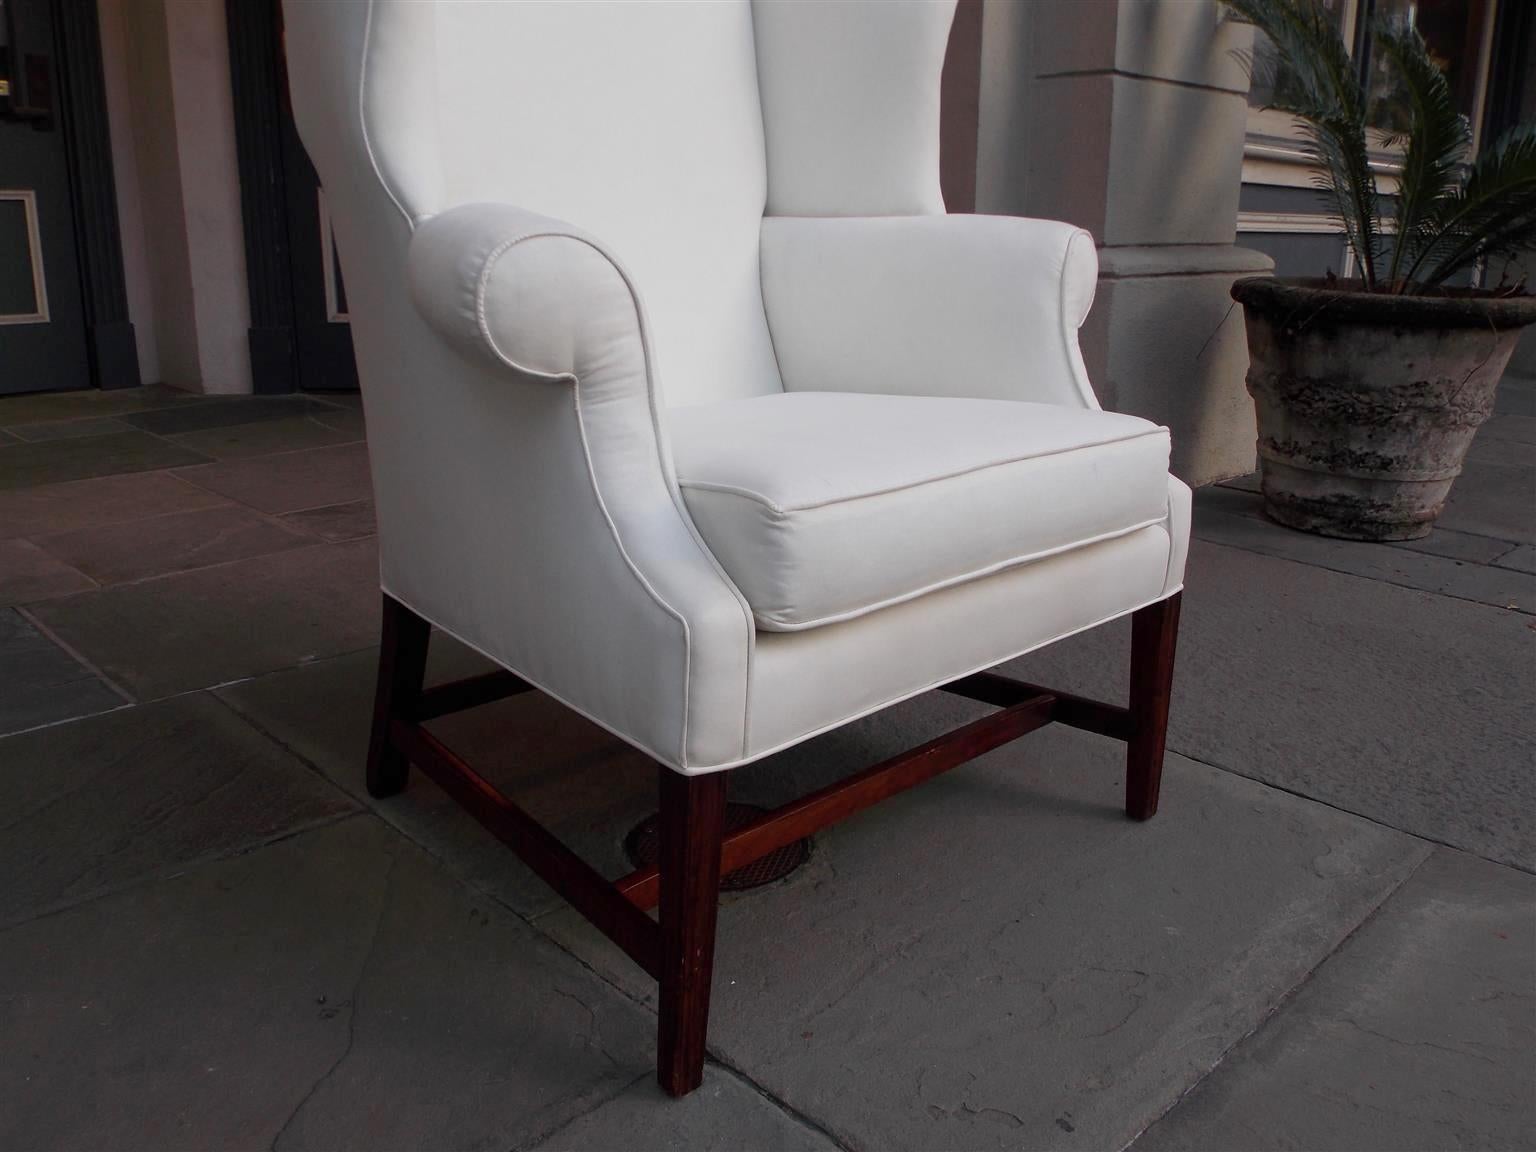 American Hepplewhite Mahogany Upholstered Wing Back Chair, New York, Circa 1790 (amerikanisch)